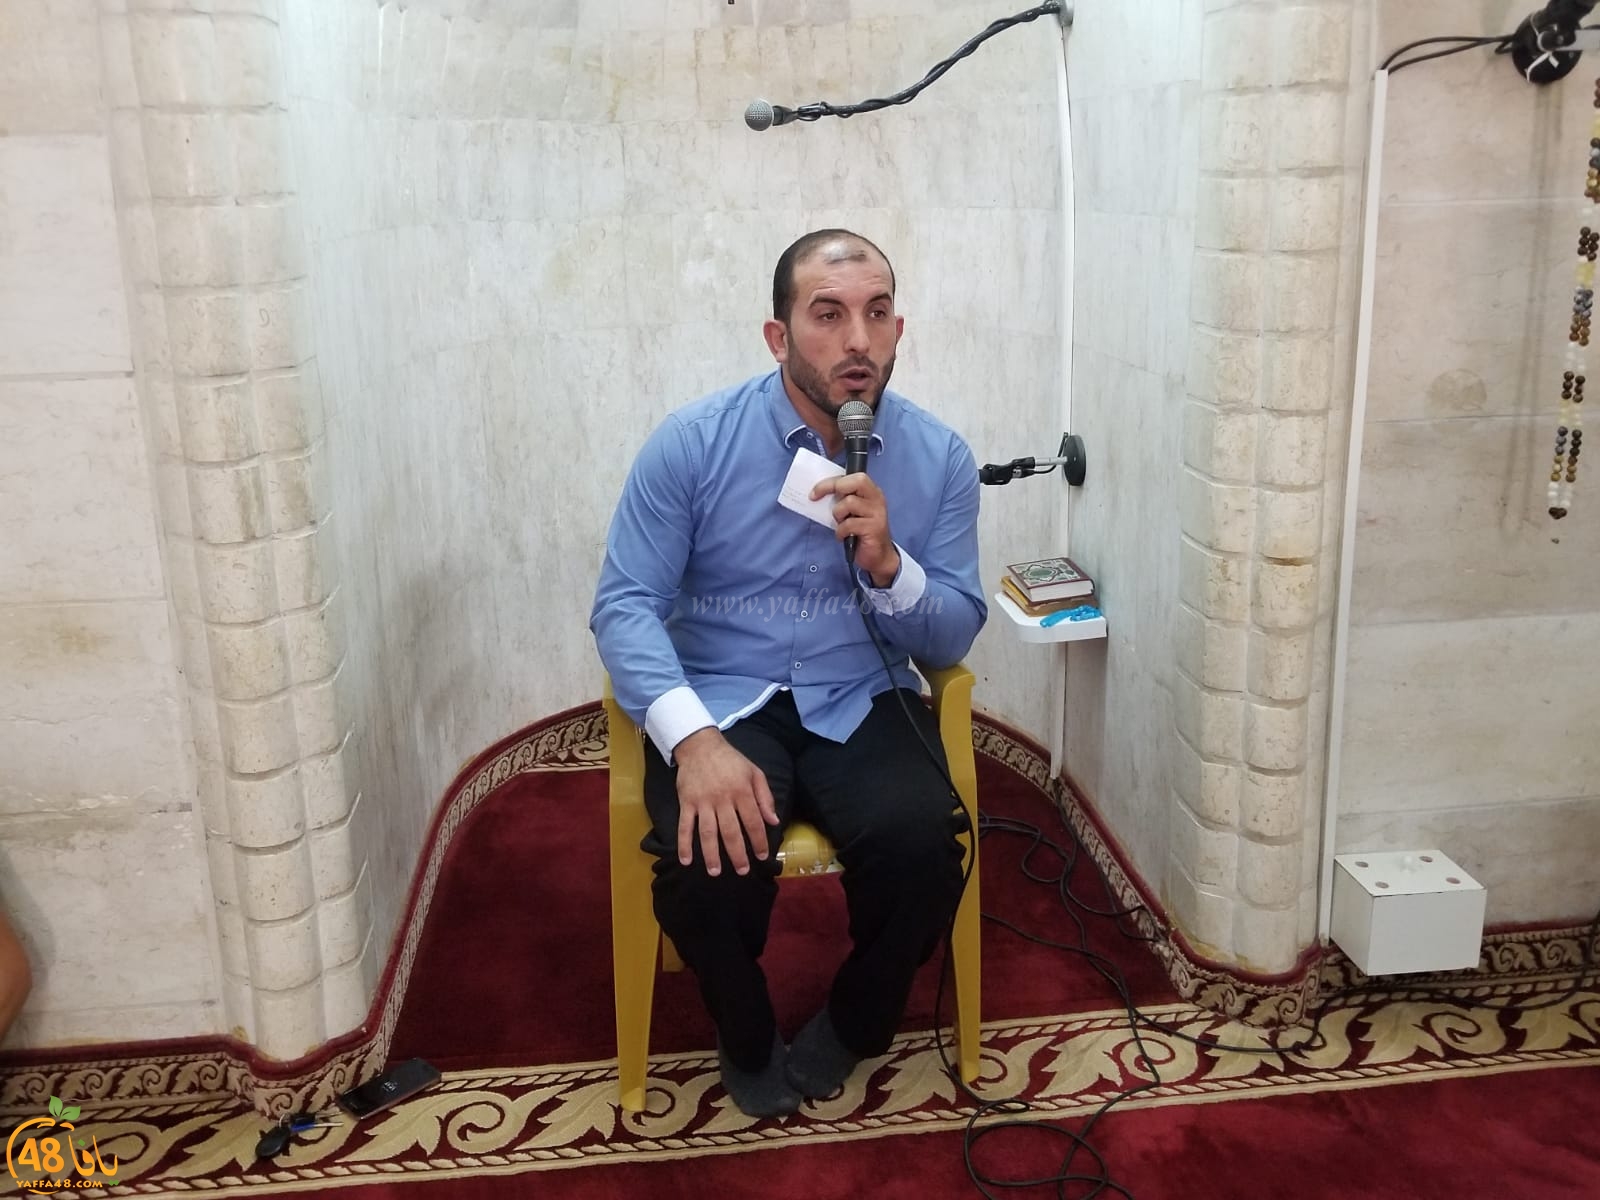 المحاضرة الأخيرة لدروس رمضان في المسجد العمري الكبير للشيخ يوسف سلامة